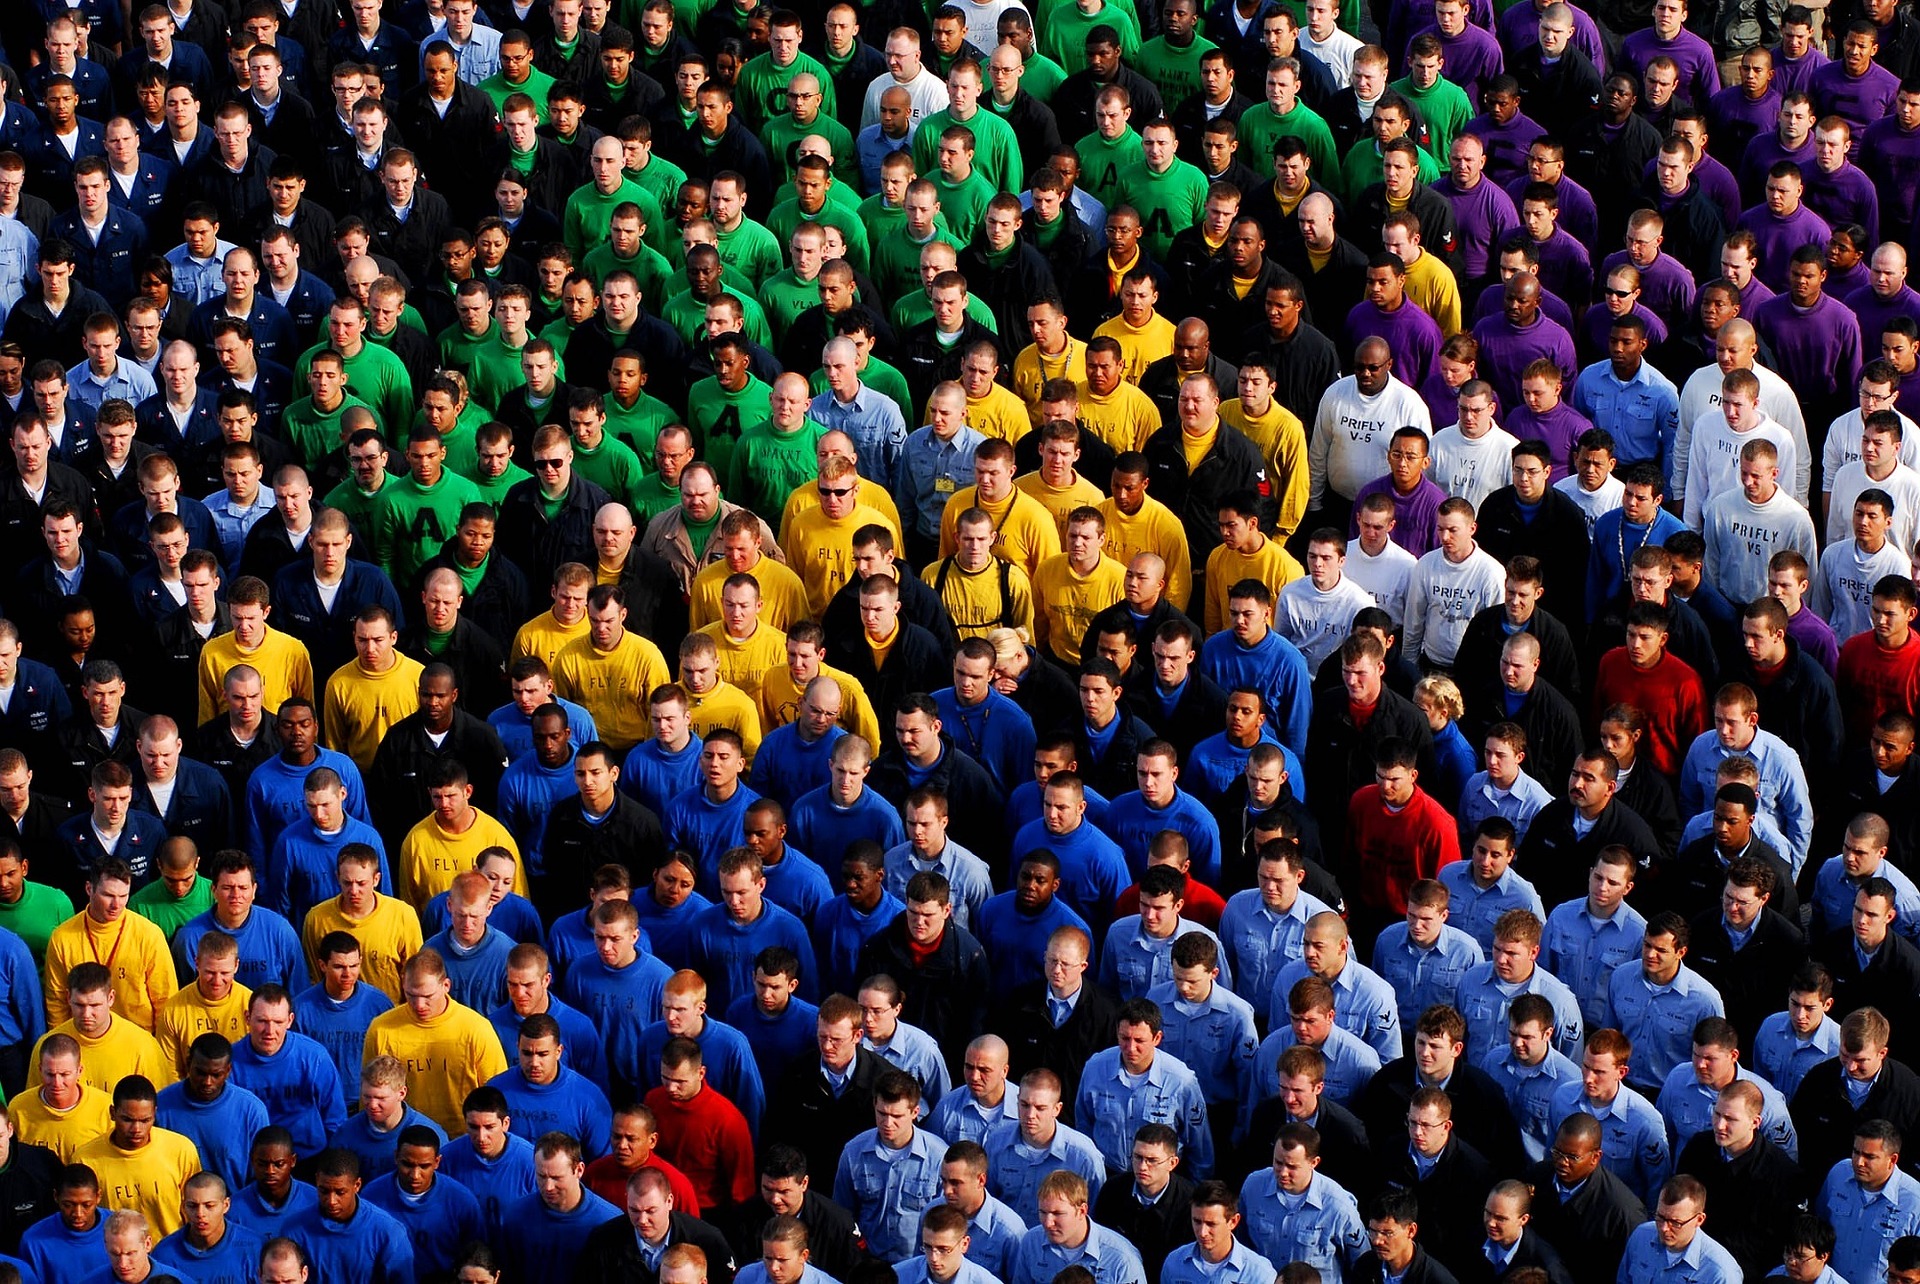 Slika prikazuje mnoštvo ljudi grupiranih po bojama majici.